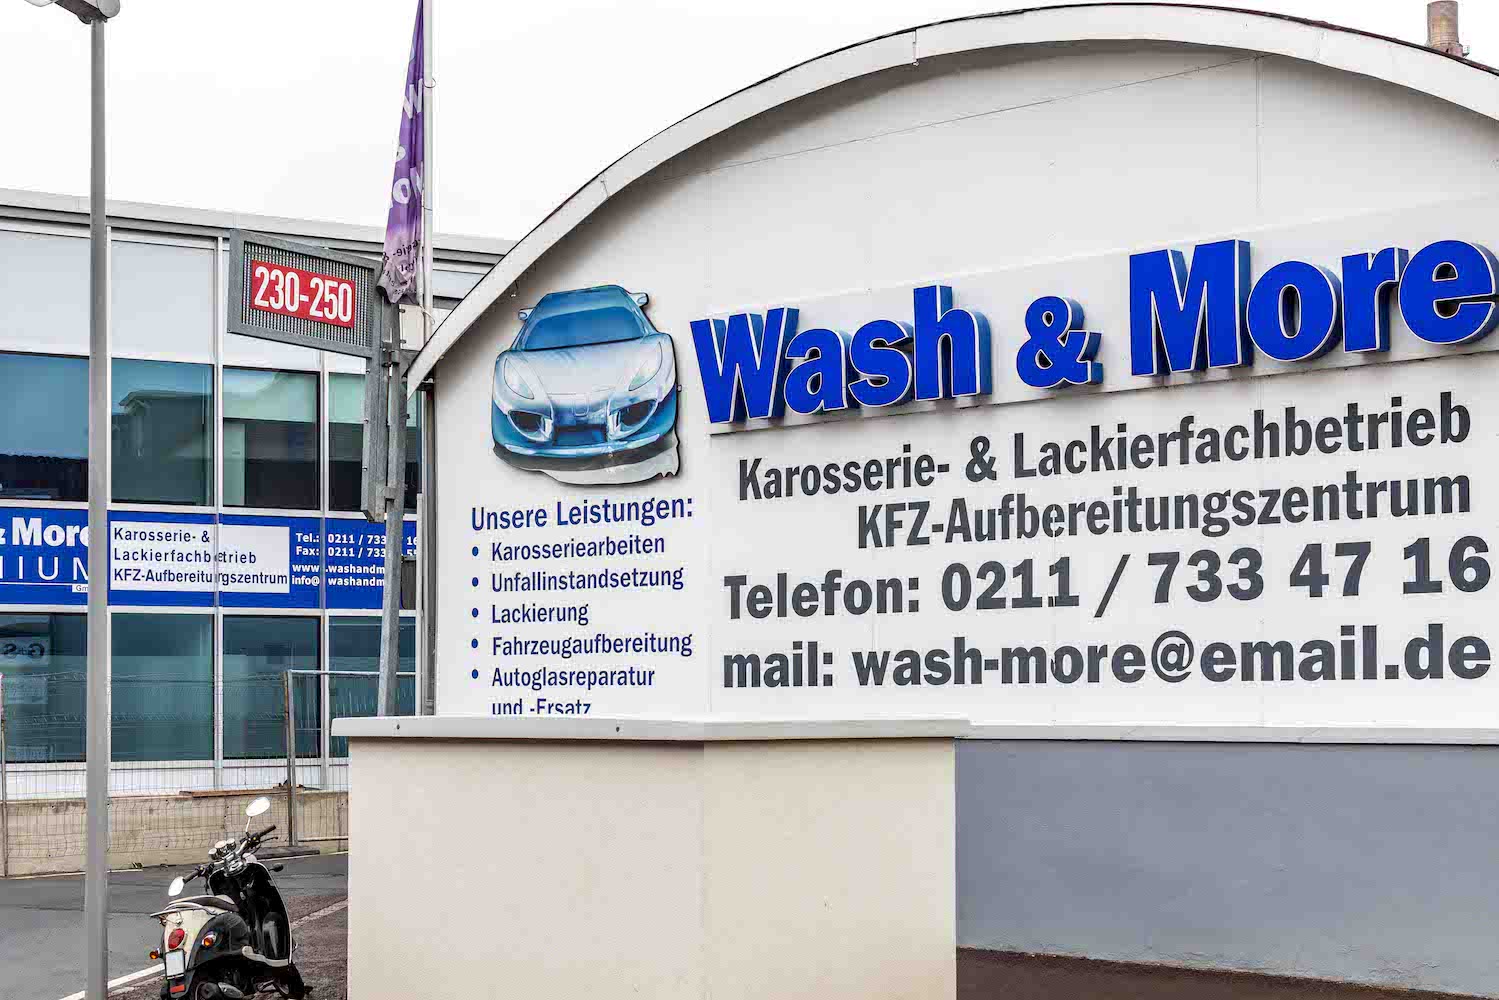 KFZ-Aufbereitungszentrum Wash & More in Düsseldorf